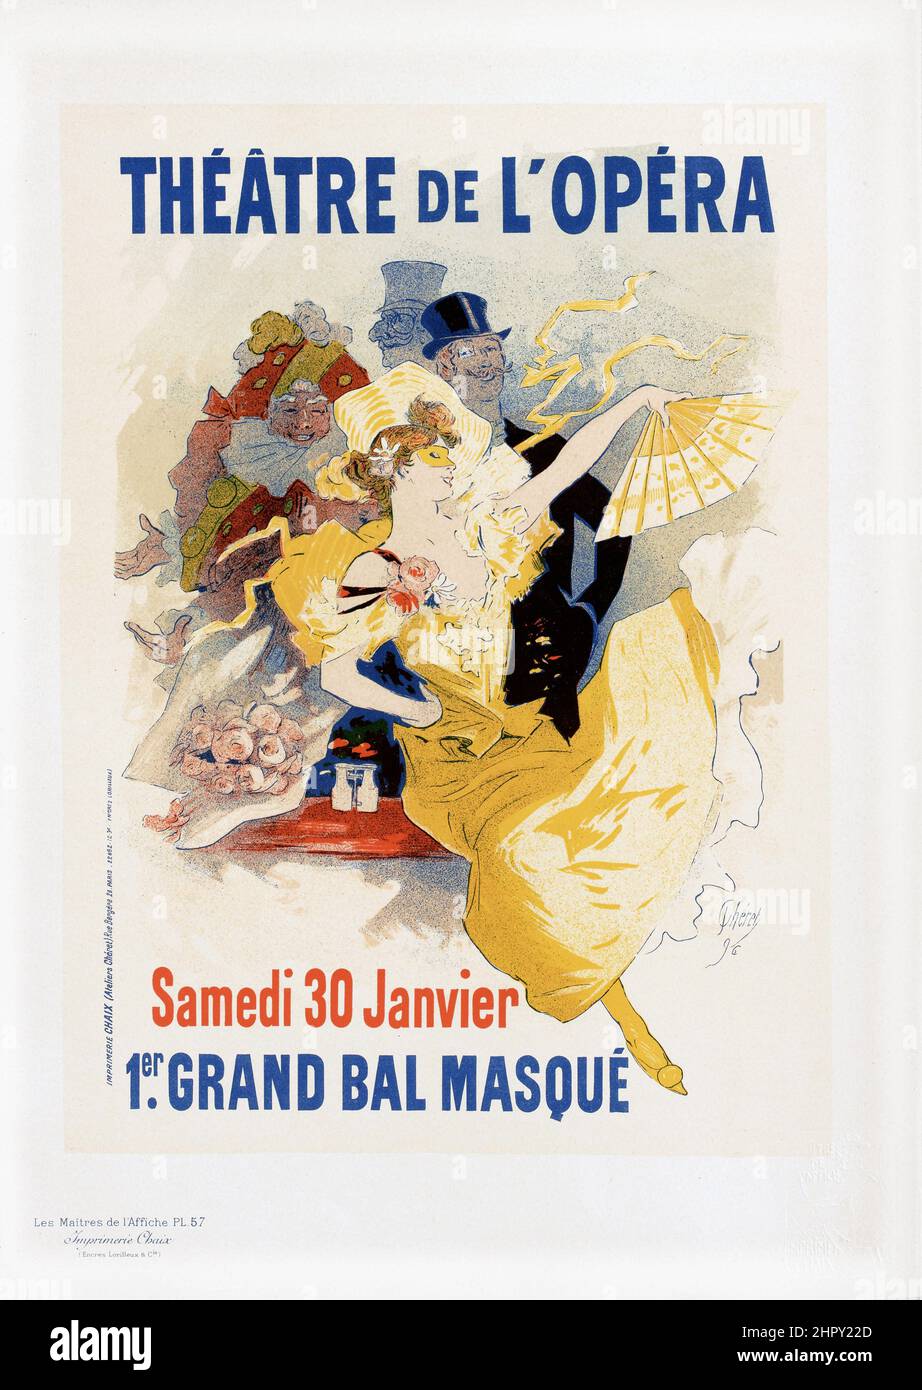 Maitres de l'affiche Vol 2 - Plate 57 - Jules Cheret. 1895. 'Theatre de L'Opera' 1er Grand Bal Masque. Stock Photo